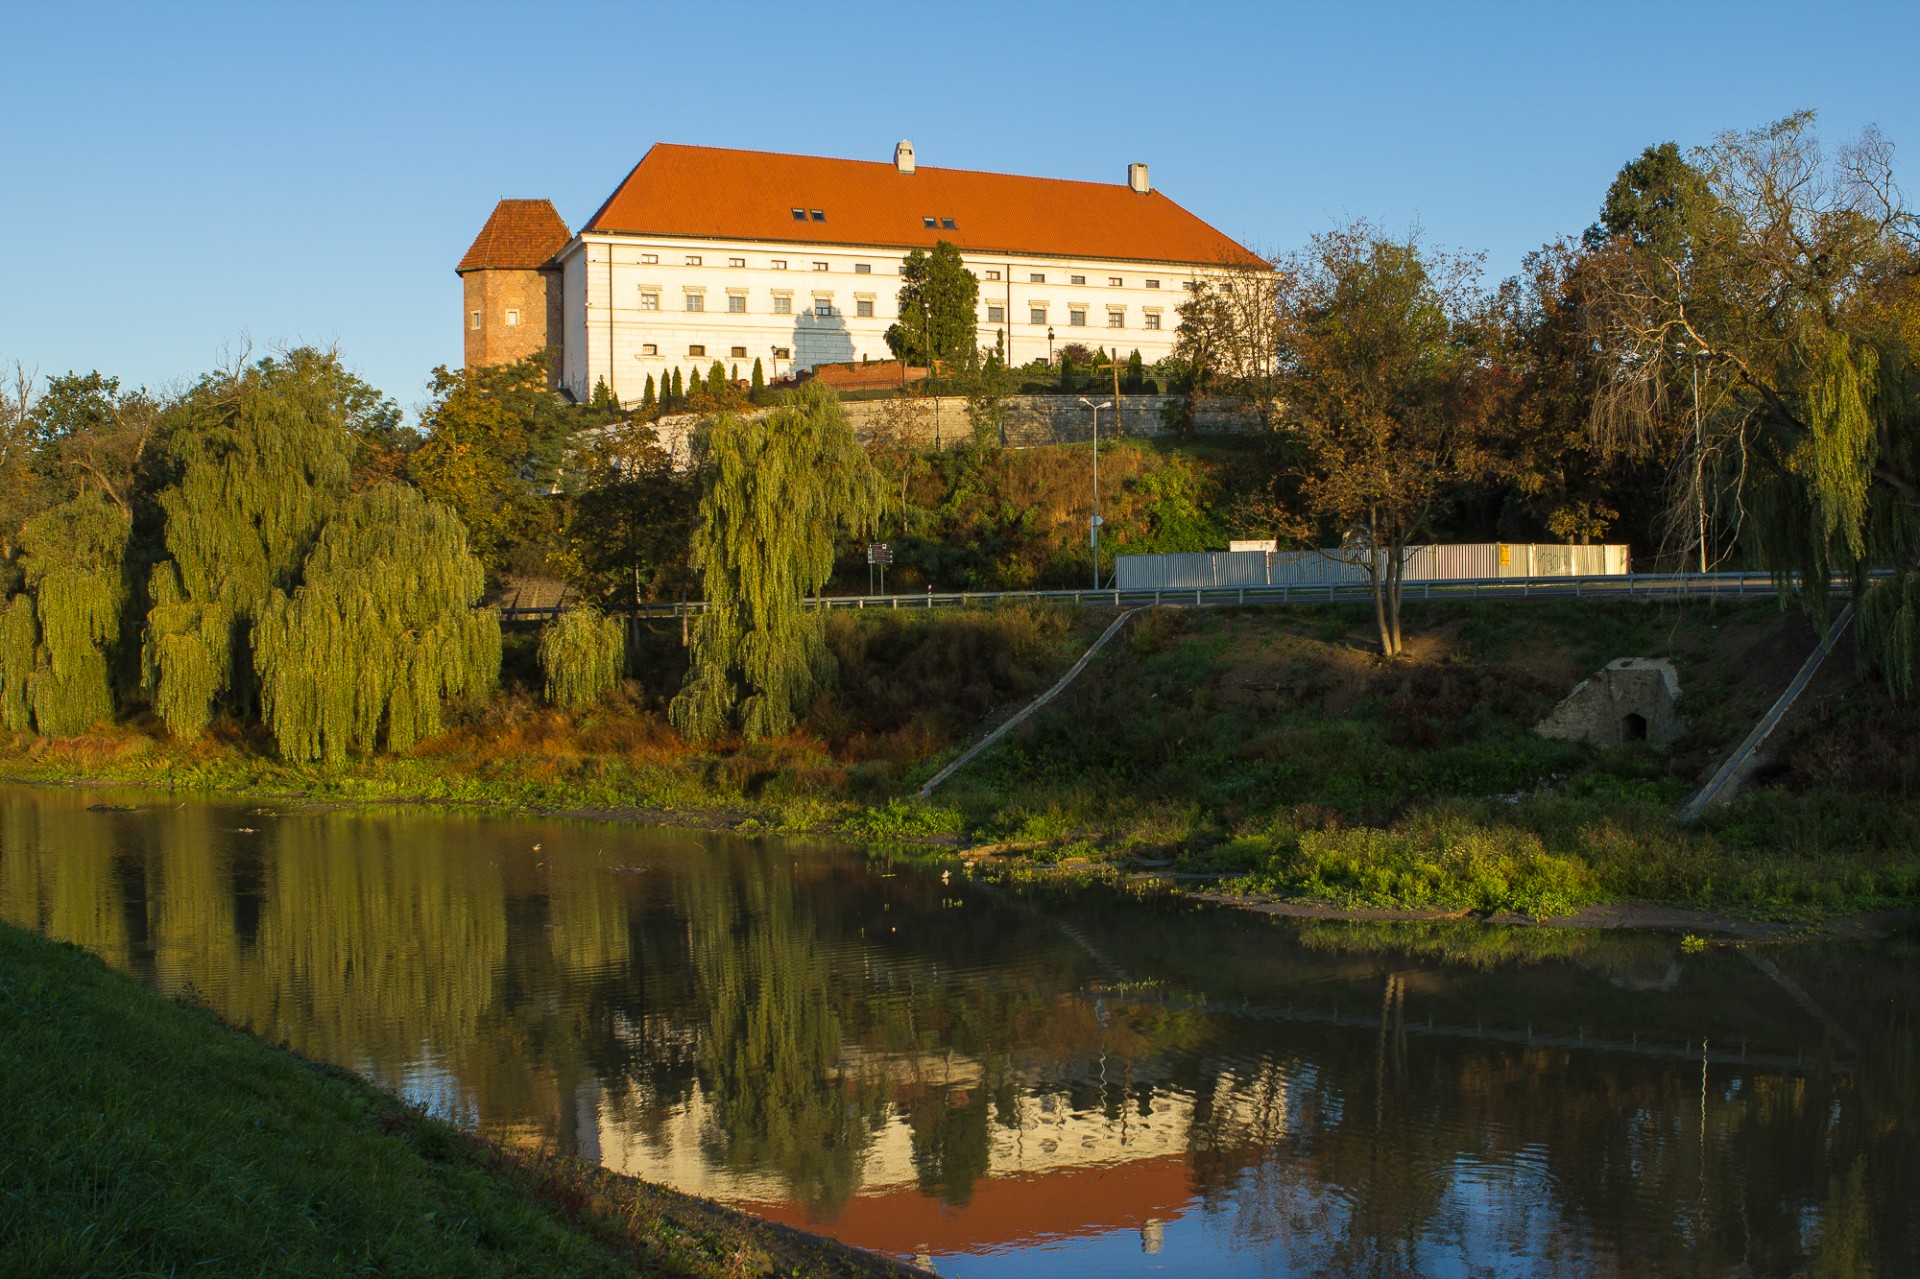 sandomierz-castle-gratis-stock-bild-public-domain-pictures